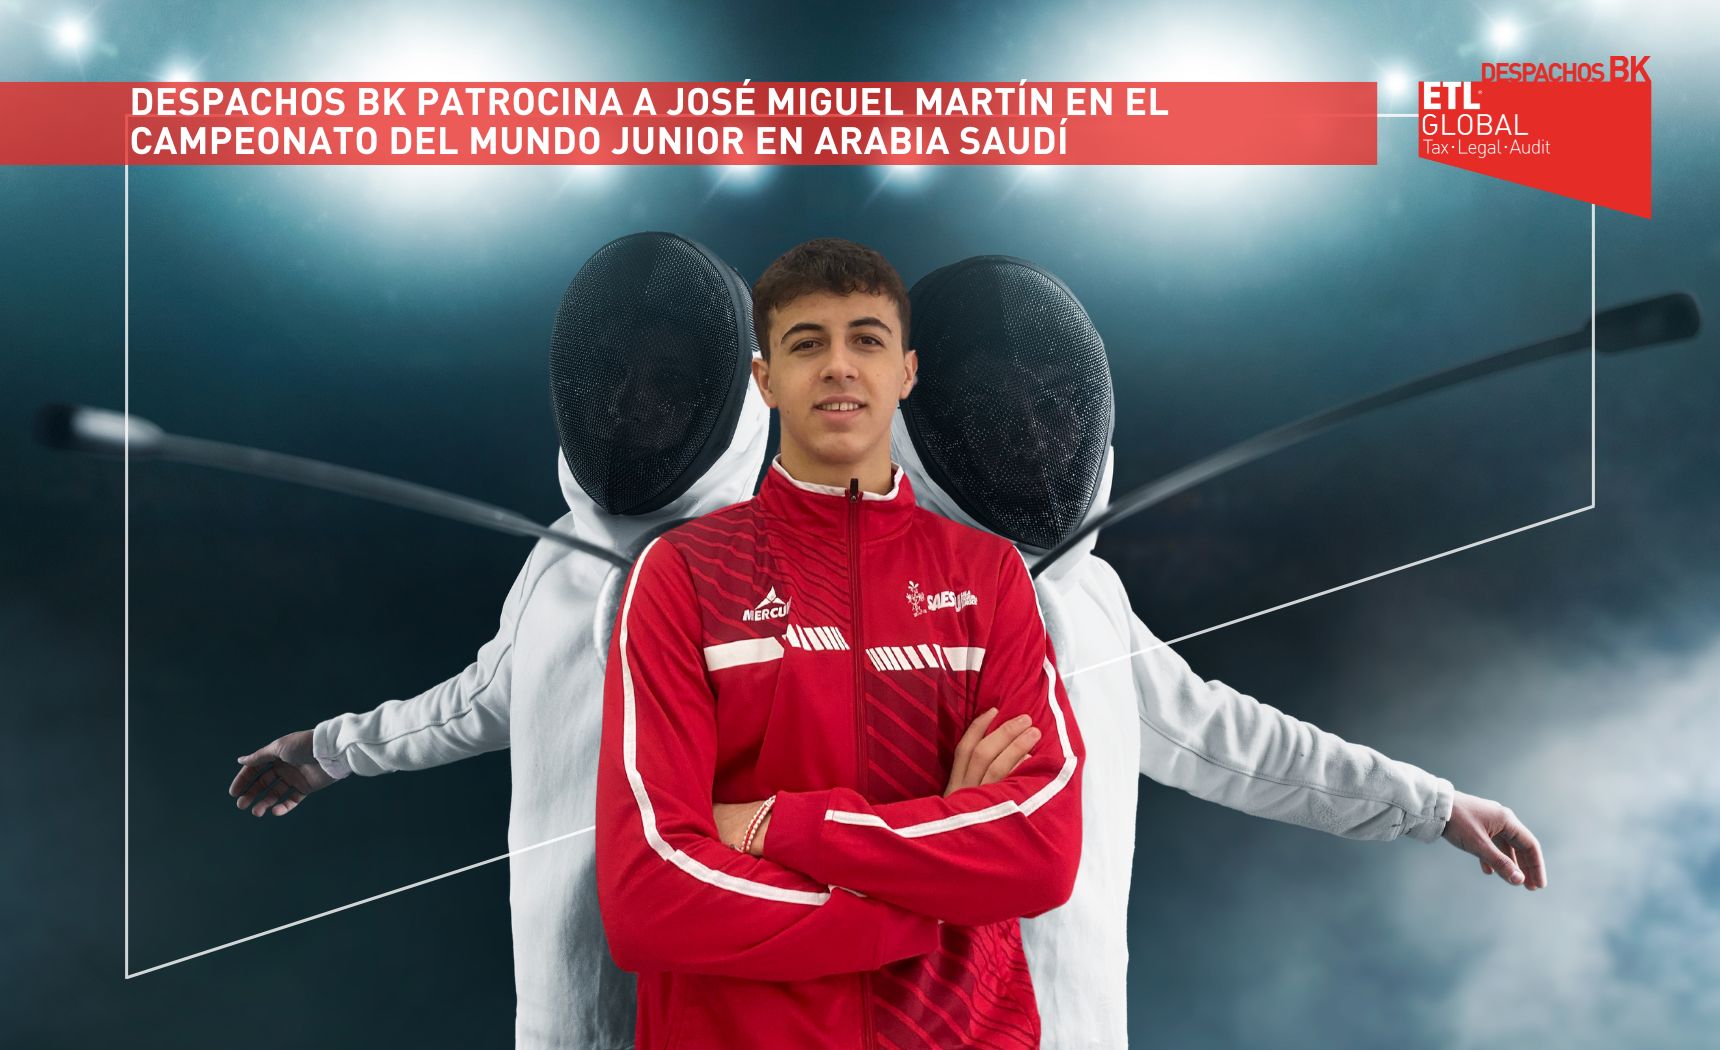 Despachos BK patrocina a JosÉ Miguel MartÍn en el Campeonato del mundo junior